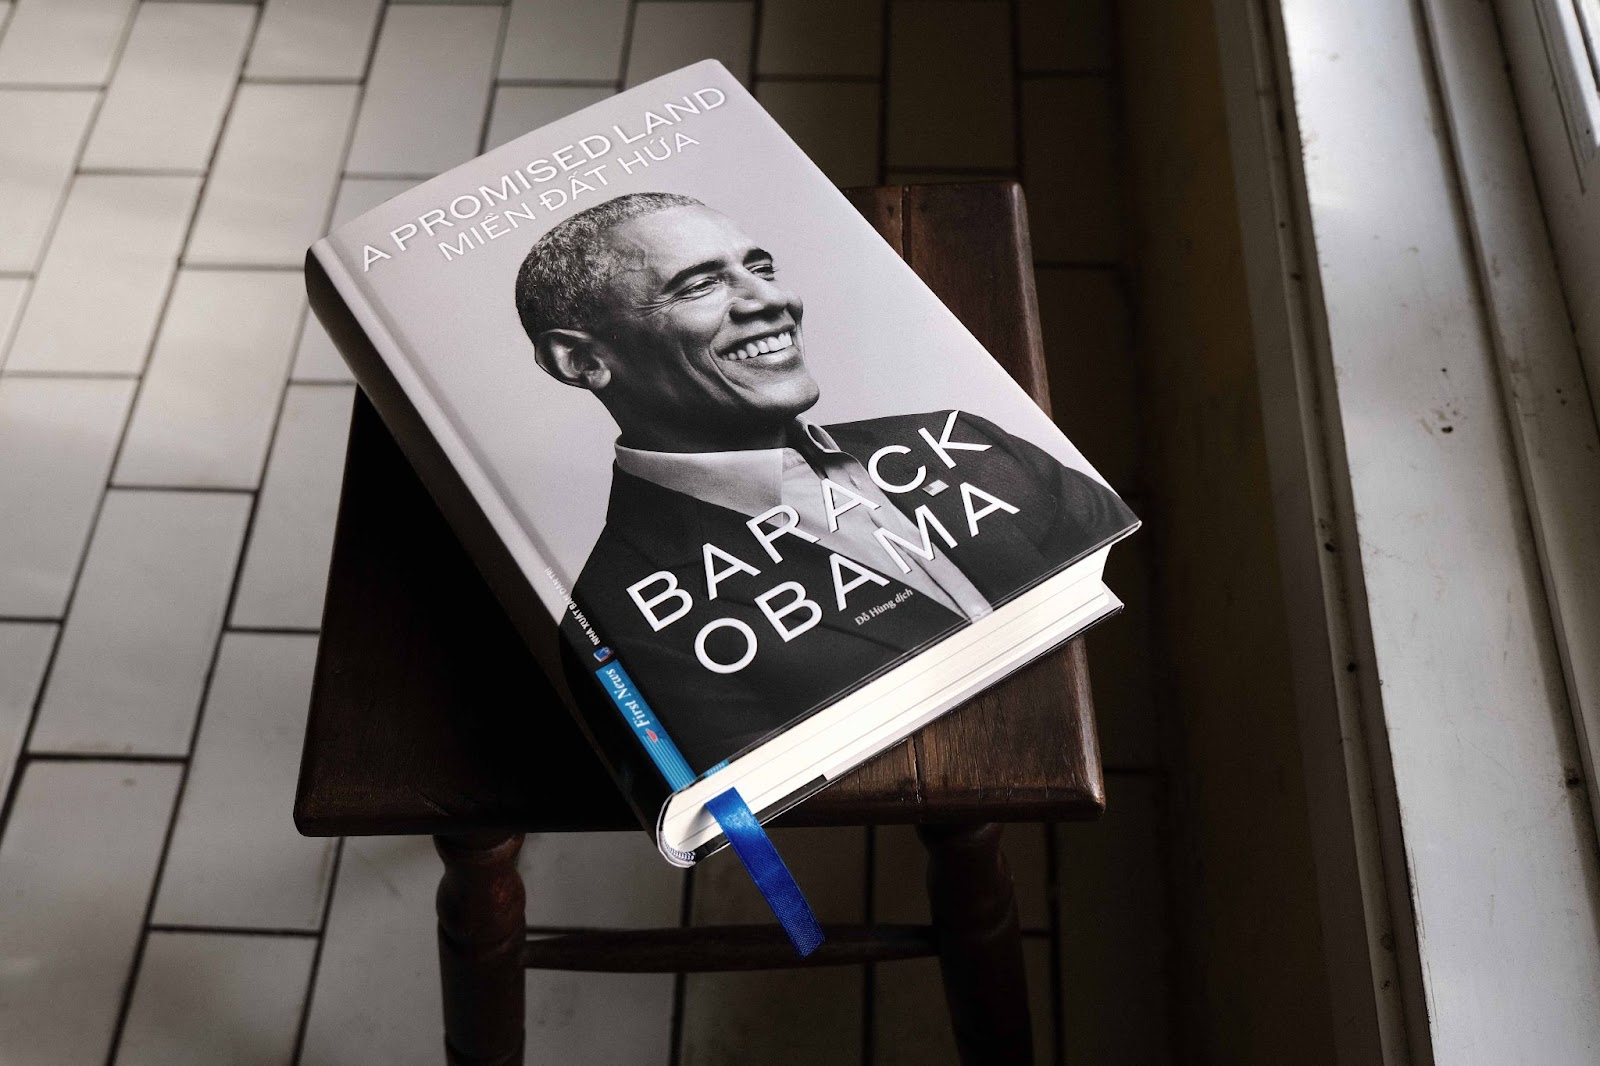 Hồi ký nổi tiếng của cựu Tổng thống Obama xuất bản tại Việt Nam - 5